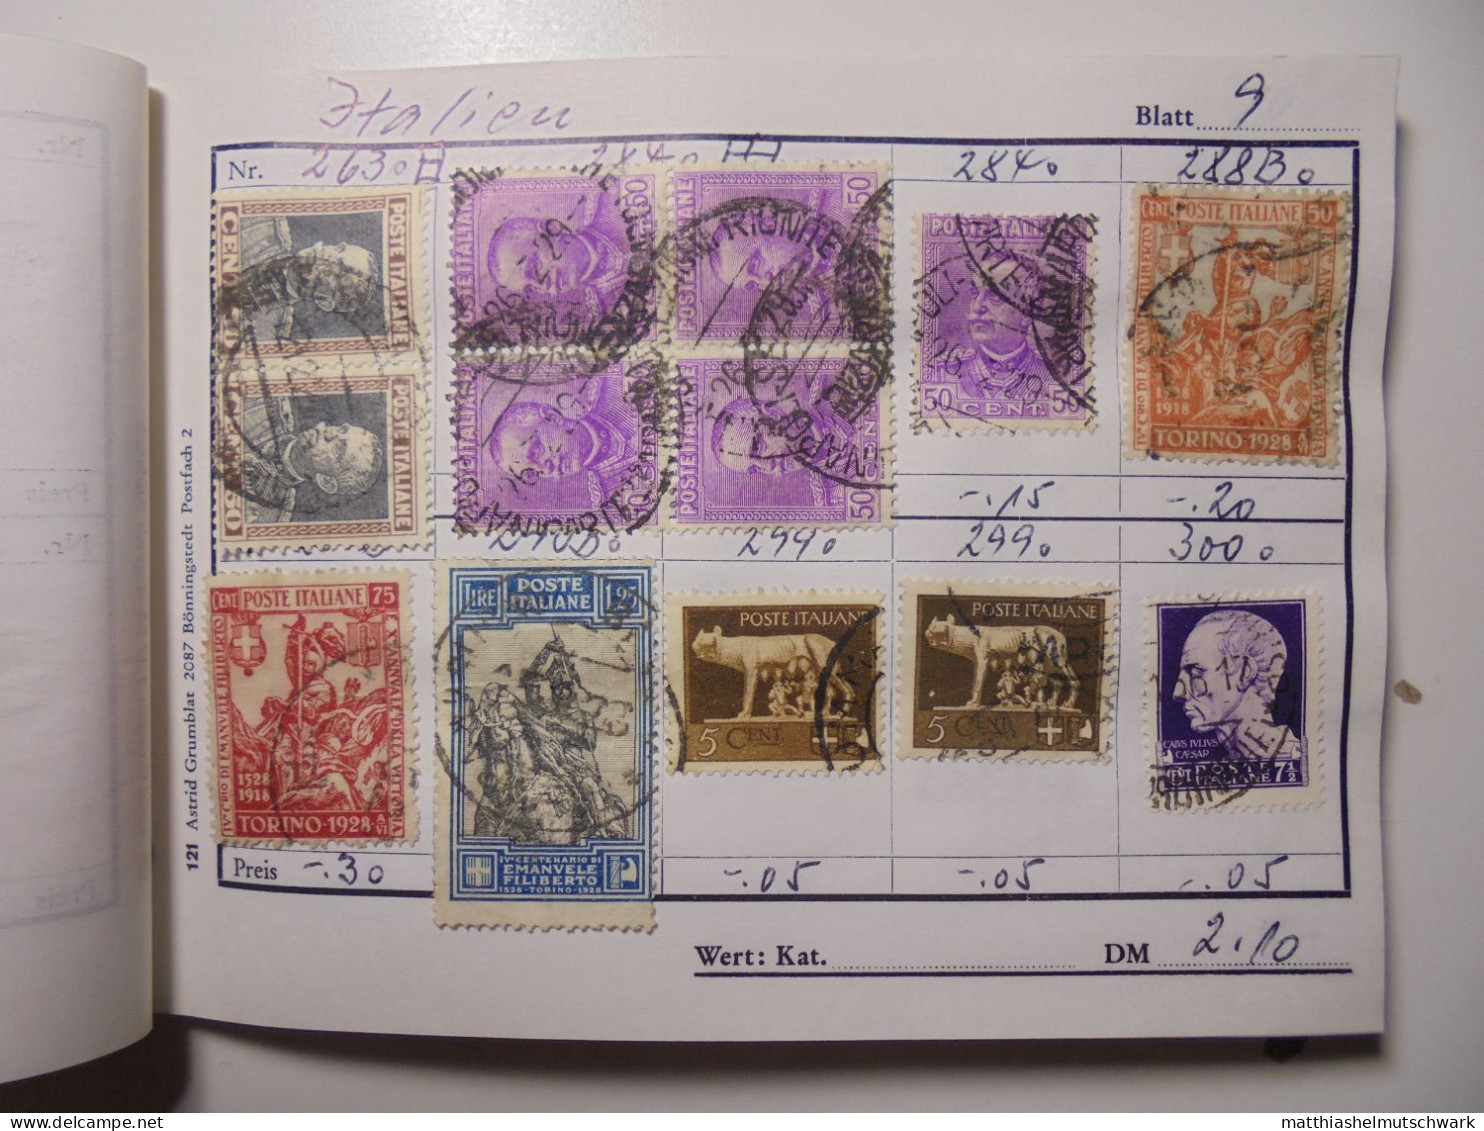 Auswahlheft Nr. 494 25 Blätter 214 Briefmarken  Italien 1879-1953/Mi Nr. 38-886, unvollständig € 100 StampWorld - Preis